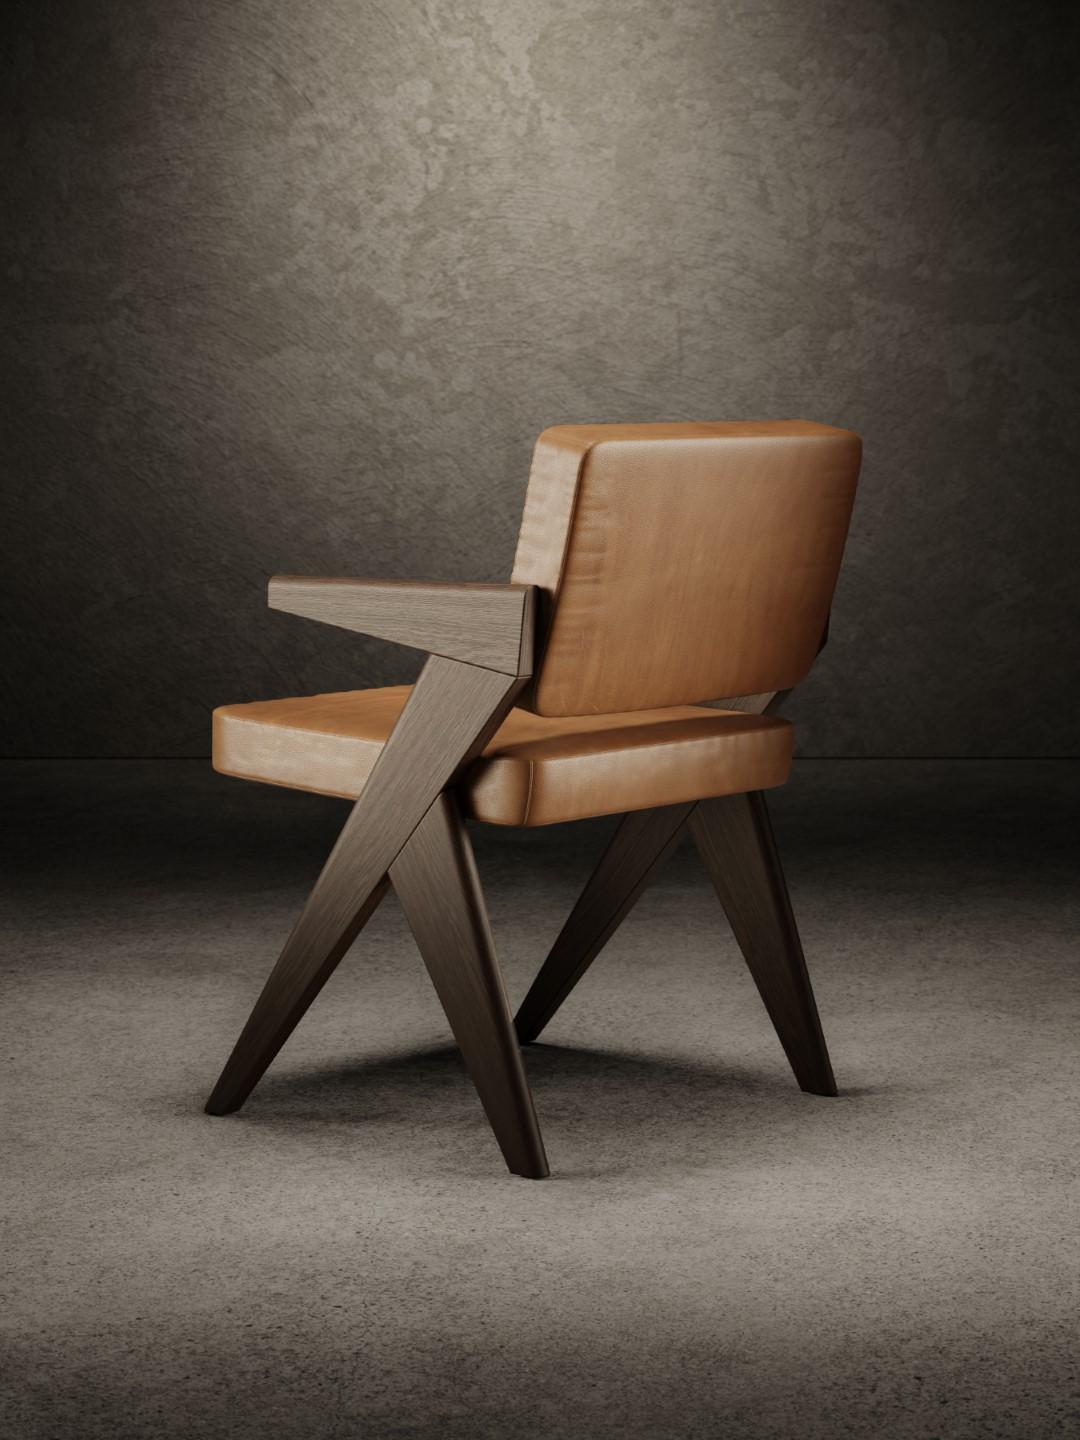 La chaise Souvenir existe en deux versions différentes - avec et sans accoudoirs - et se compose de deux côtés structurels en bois d'orme sablé, finis avec une laque mate, naturelle ou foncée. 
L'assise et le dossier sont rembourrés de mousse de